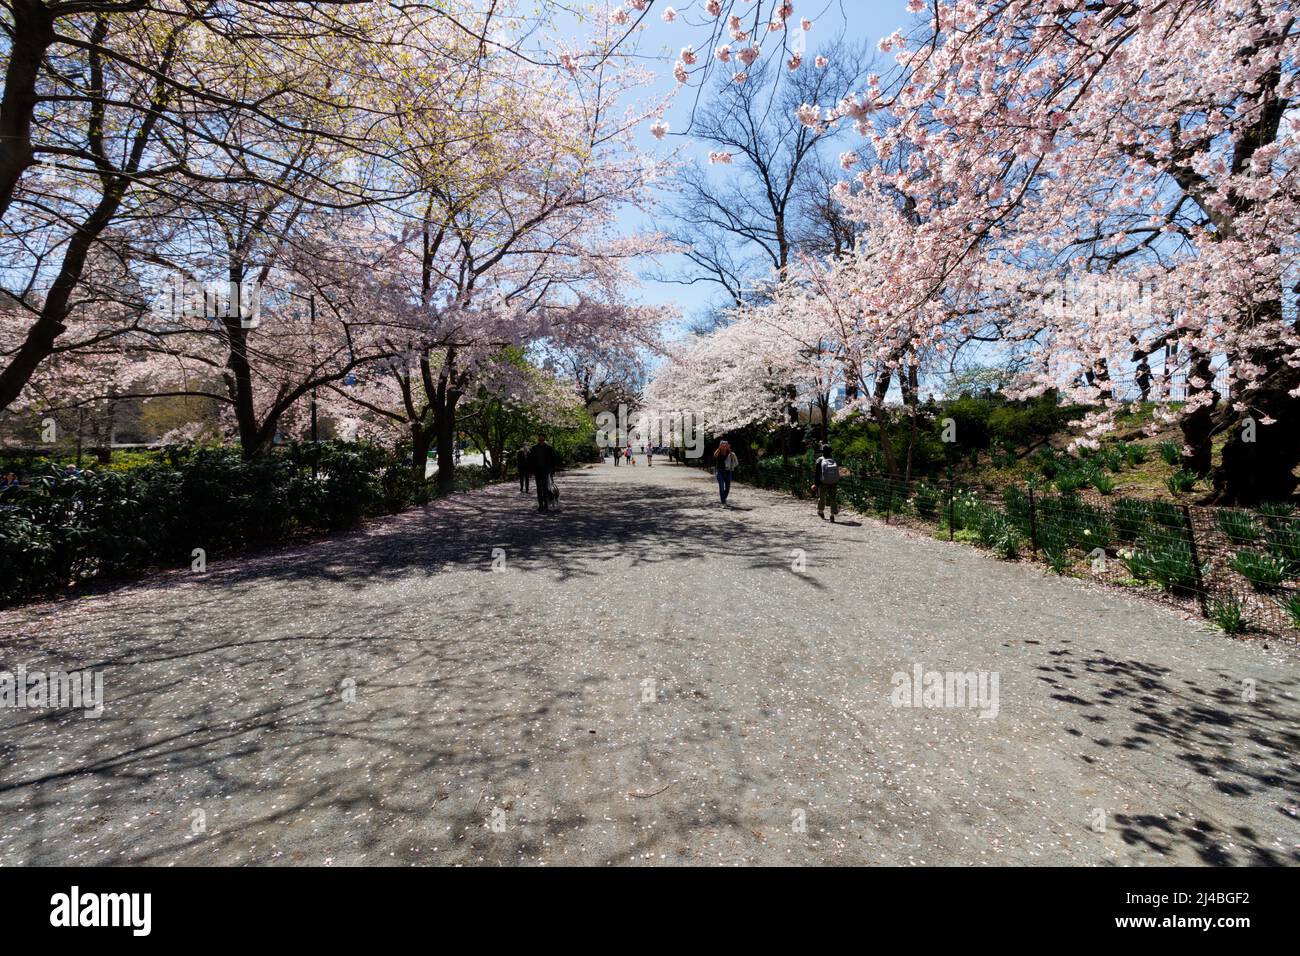 Gente caminando por un camino en Central Park, Nueva York con cerezos en flor en flor arqueando en un día de primavera Foto de stock